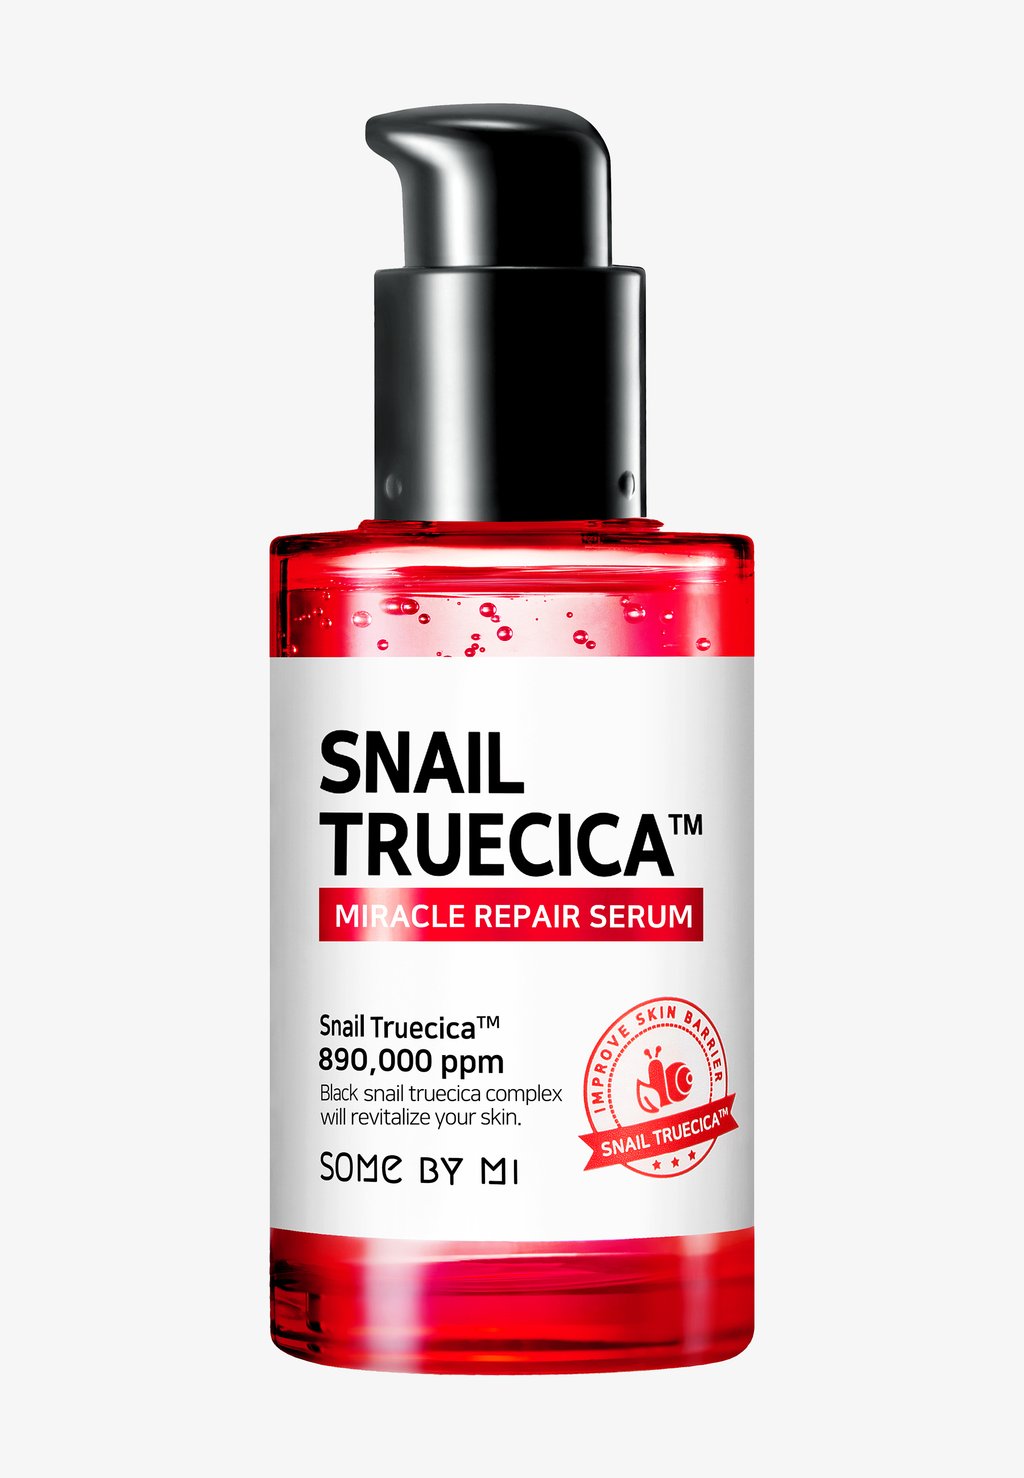 Сыворотка Snail Truecica Miracle Repair Serum SOME BY MI some by mi snail truecica восстанавливающая сыворотка 50 мл